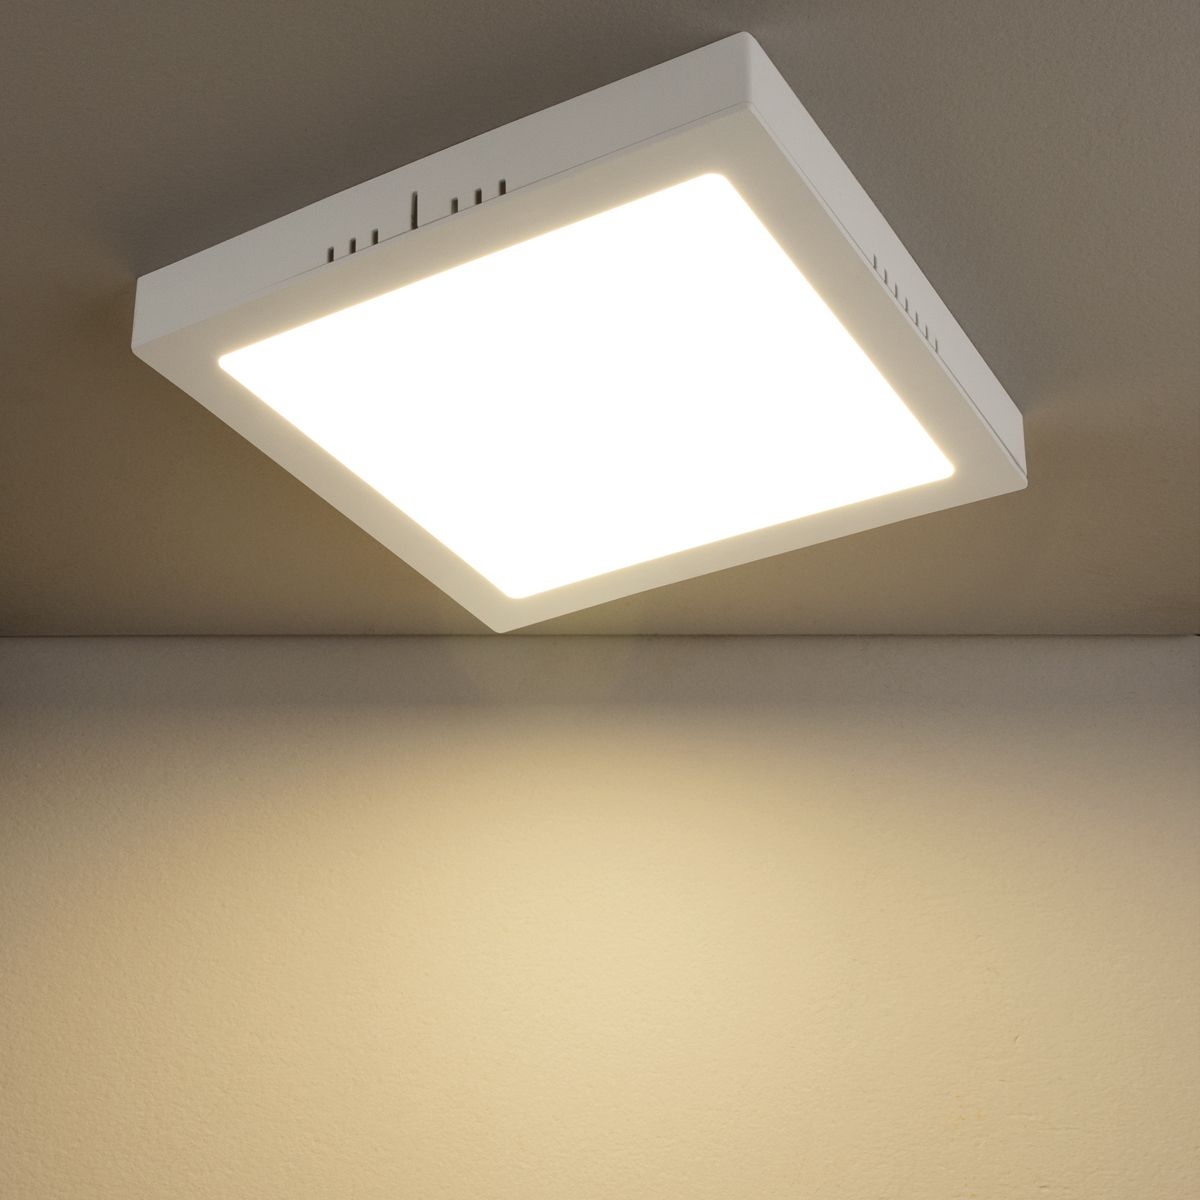 Универсальный накладной/встраиваемый потолочный светодиодный светильник